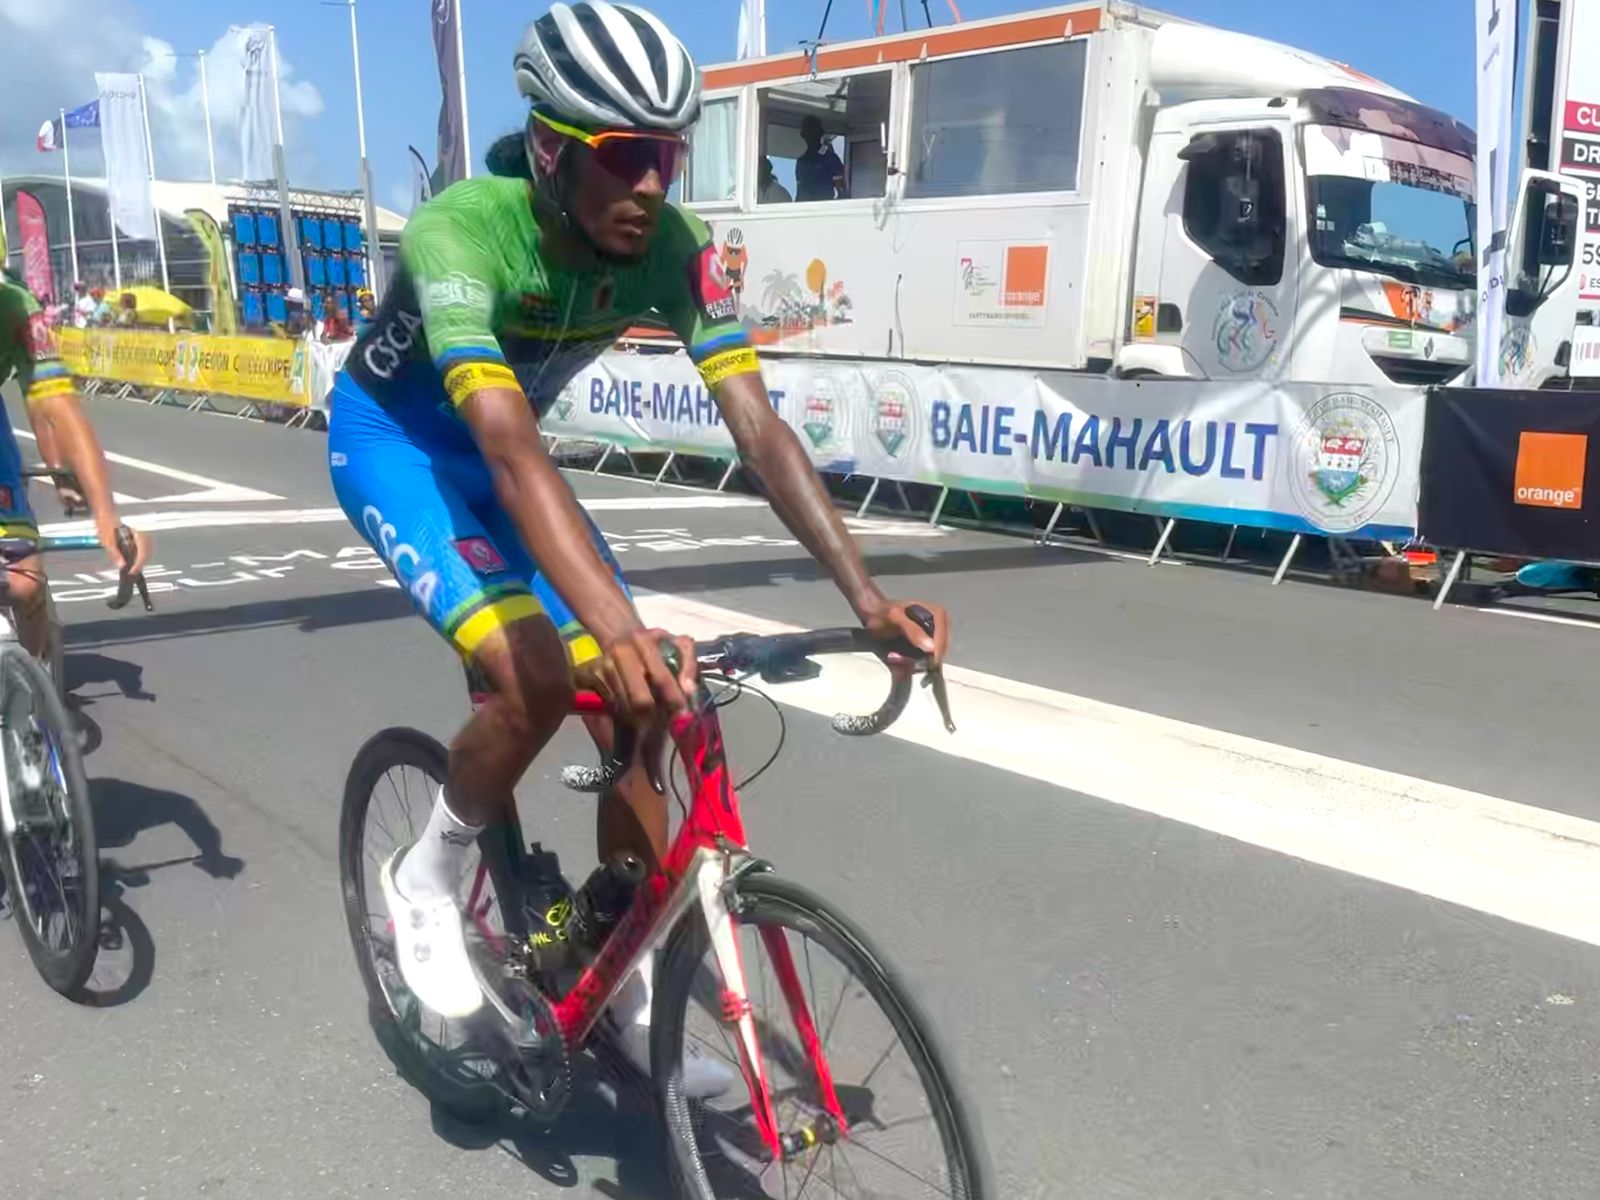     Méving Gène remporte le Grand Prix du Comité Régional Cycliste des Iles de Guadeloupe

